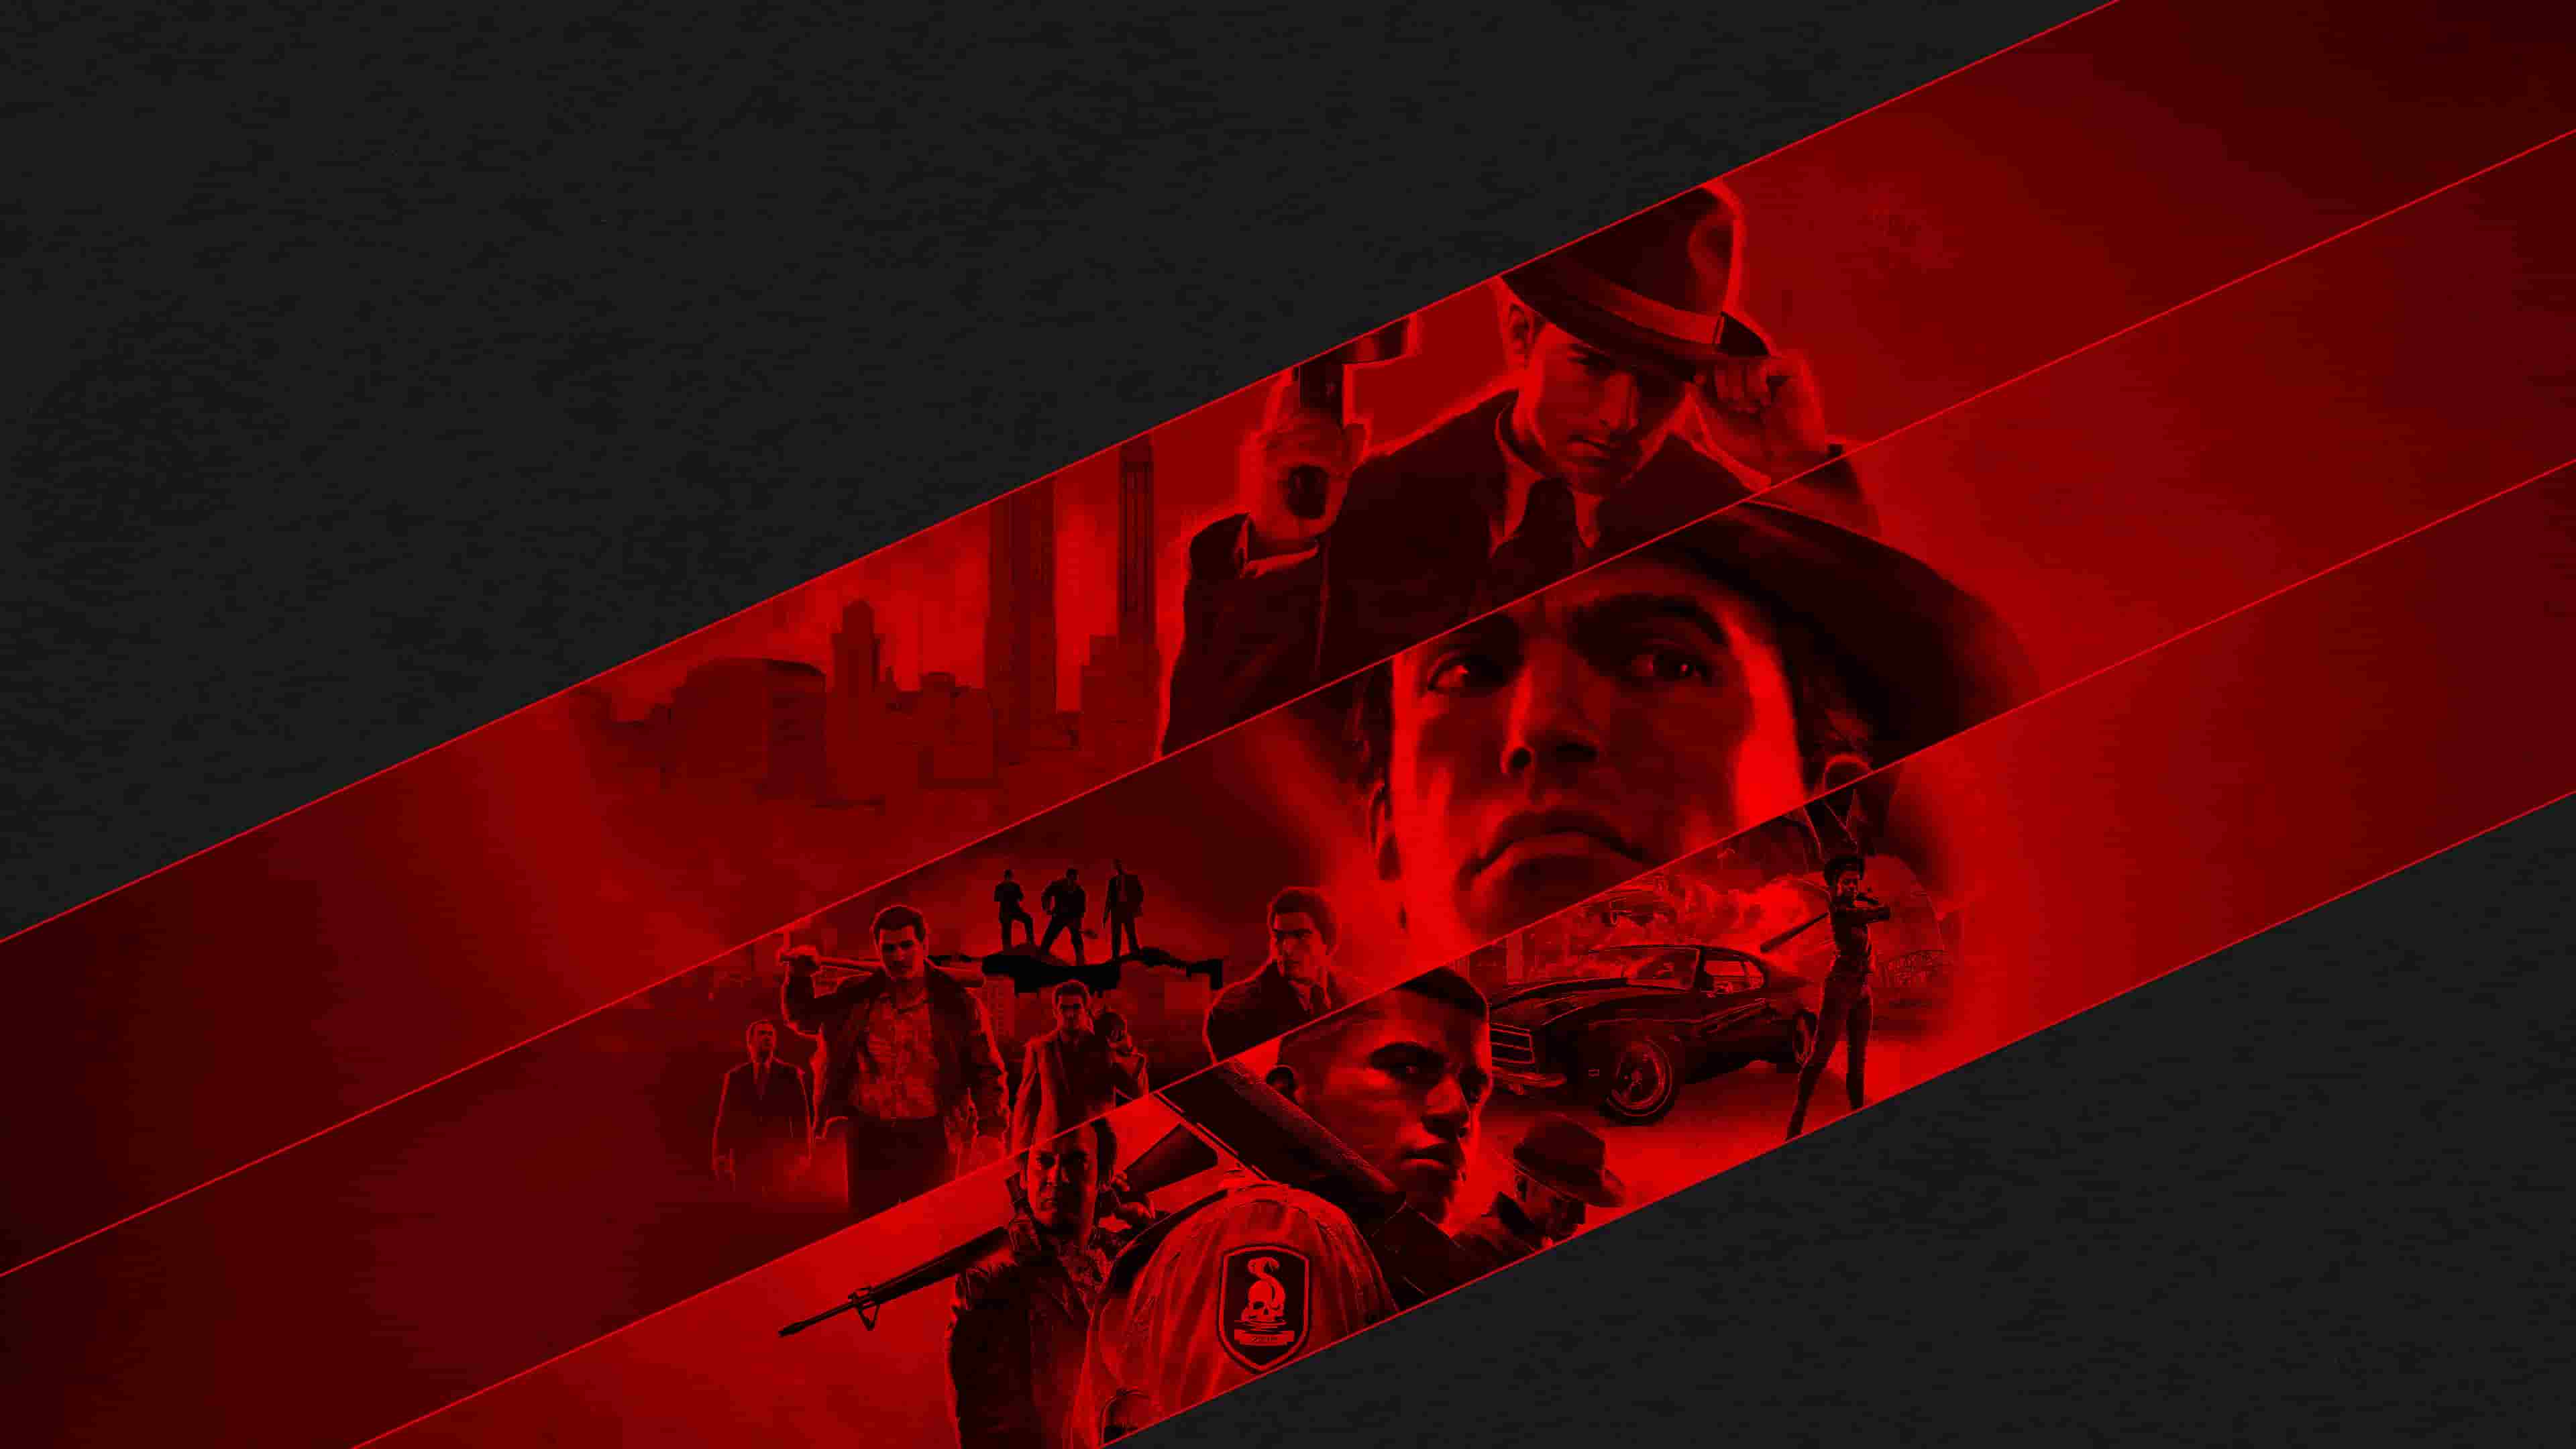 Mafia II 2 Definitive Edition for PC Game Steam Key Region Free